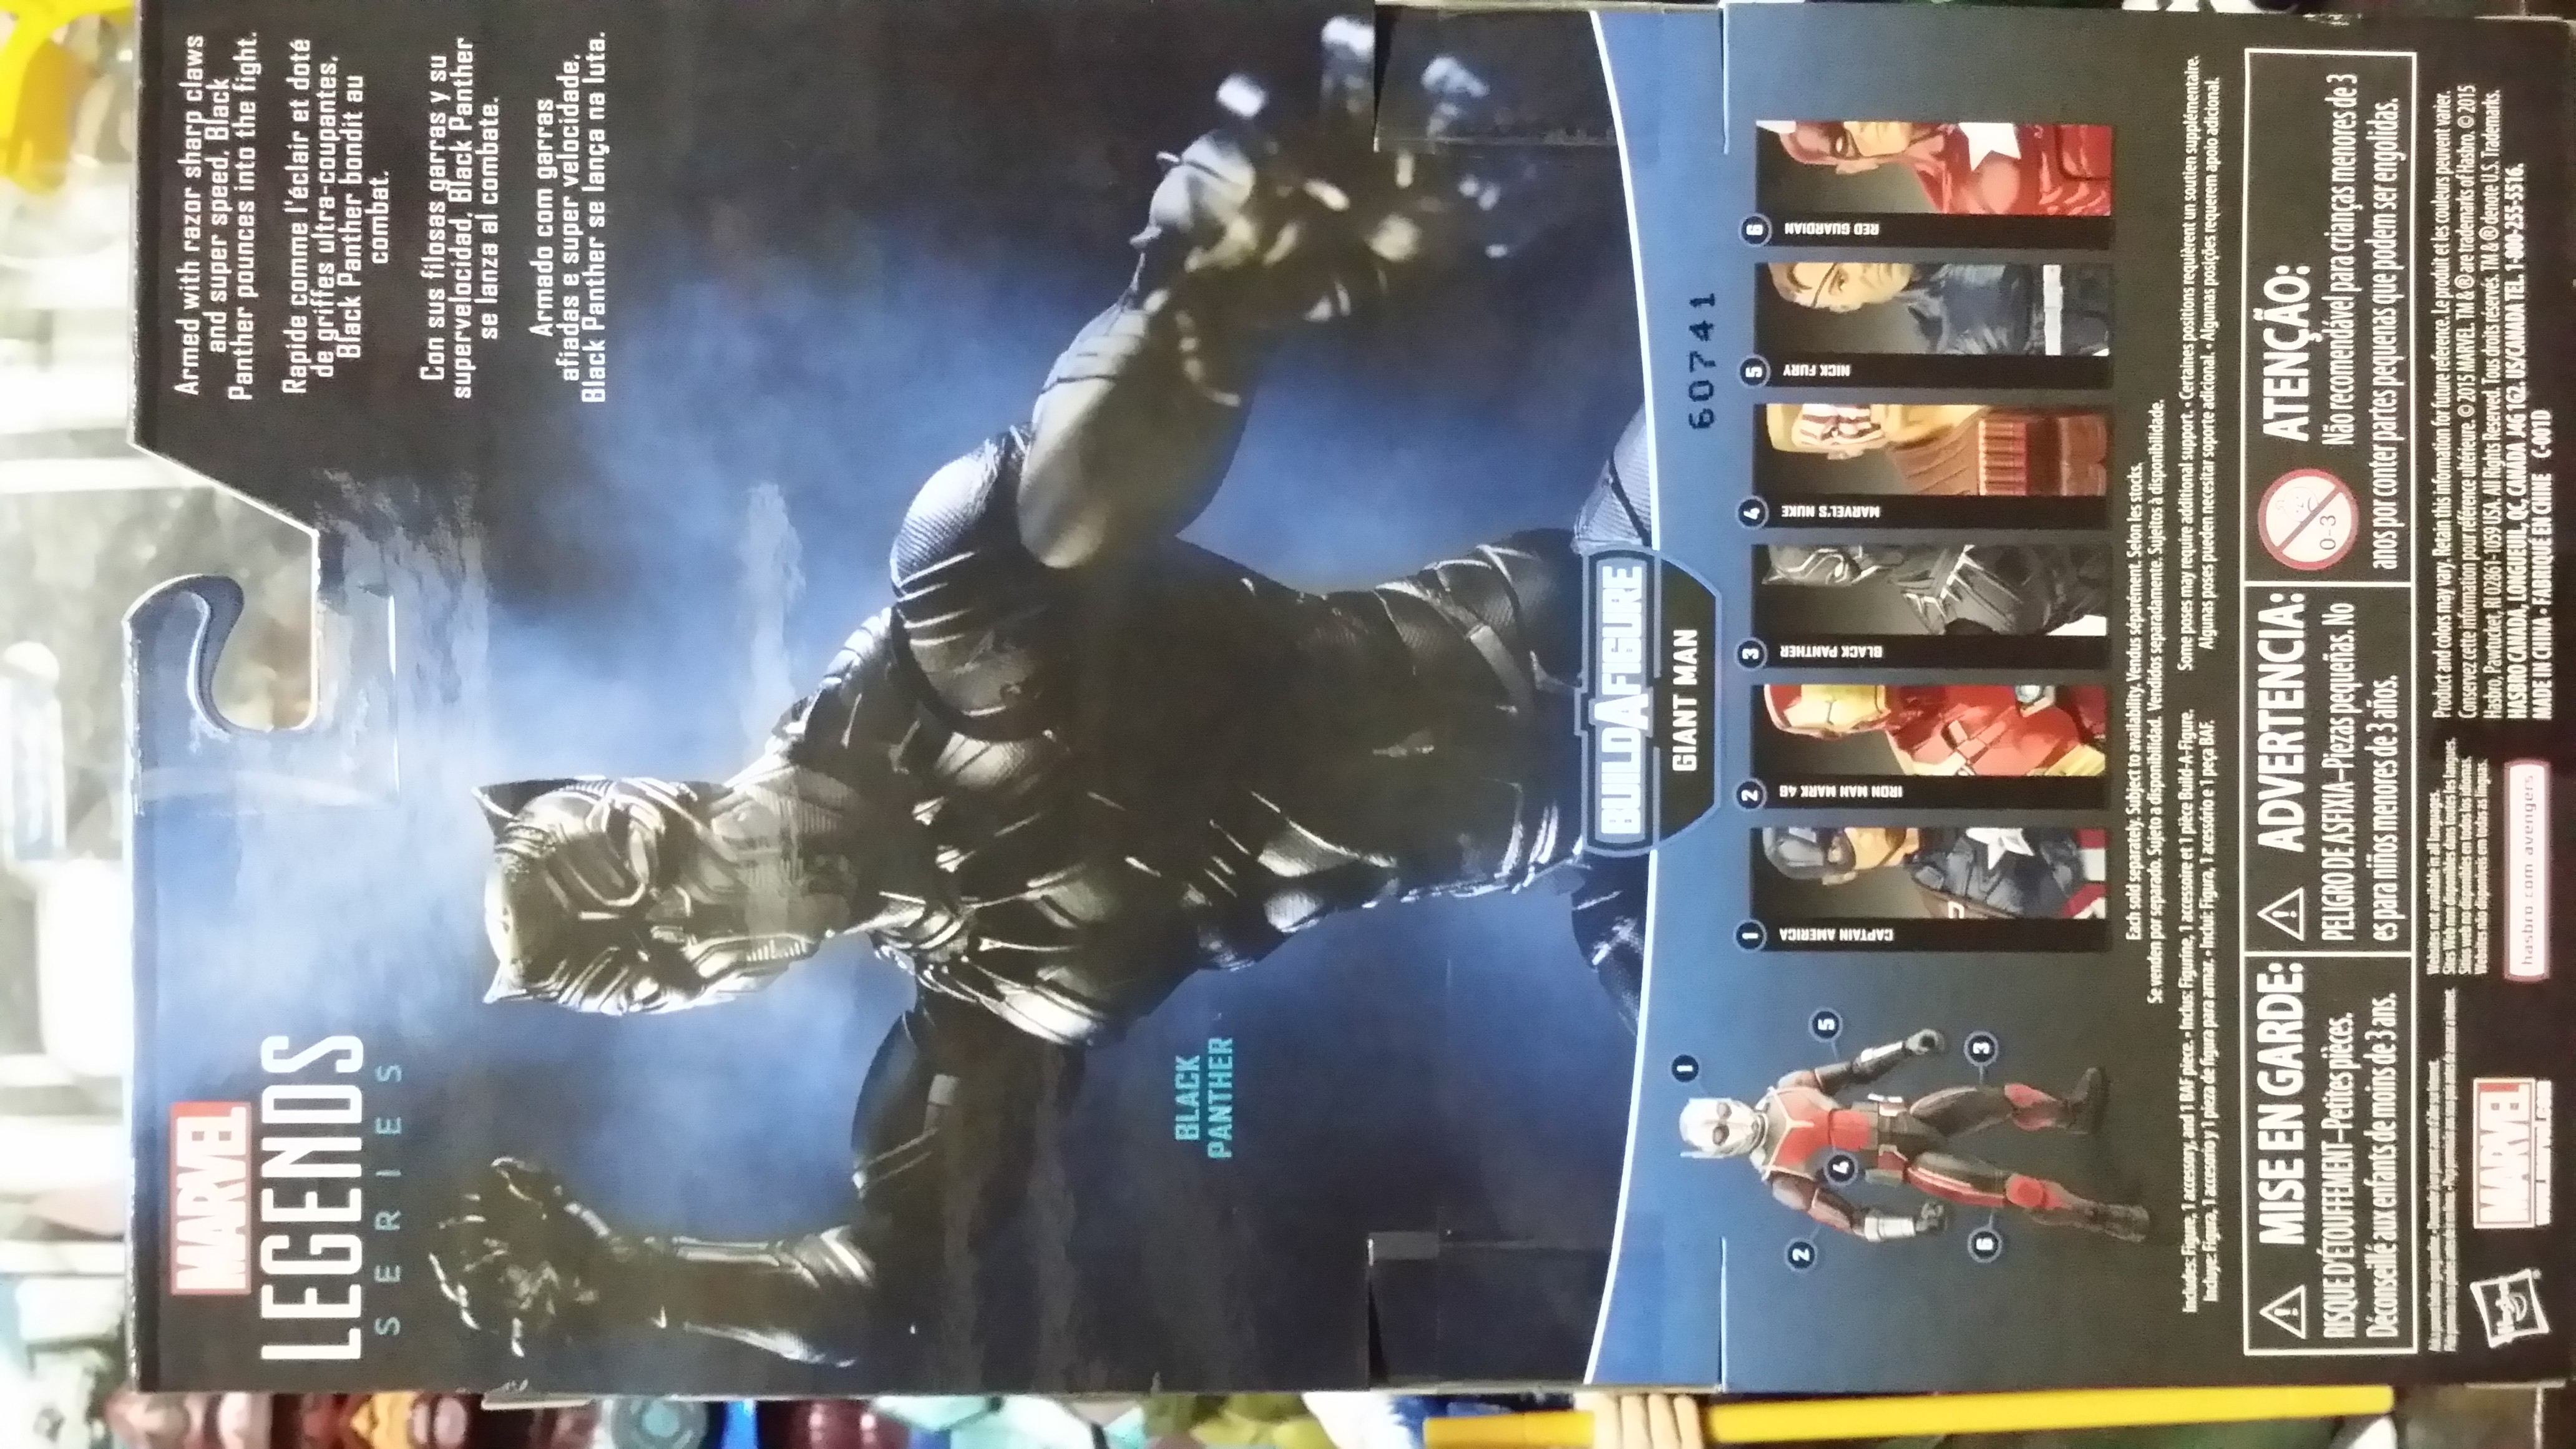 Marvel Legends 6" movie Black Panther (Captain America Civil War wave)